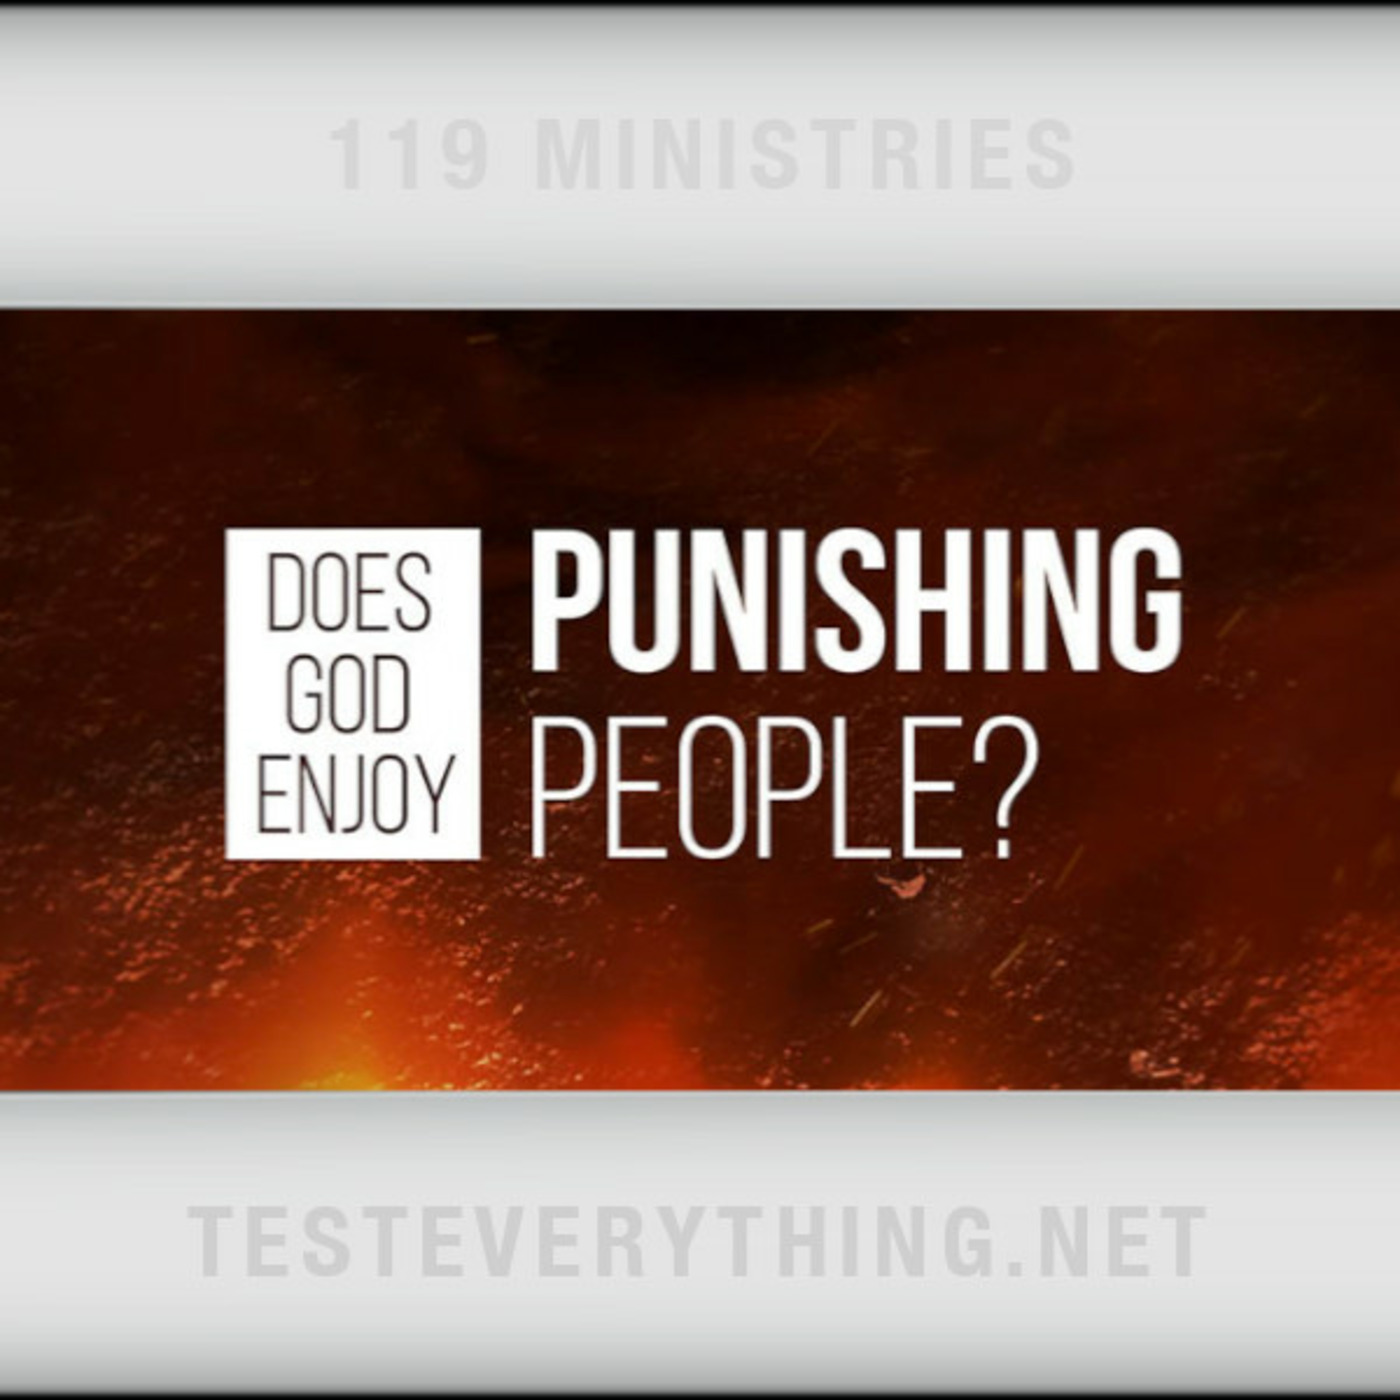 Episode 559: TE: Does God Enjoy Punishing People?